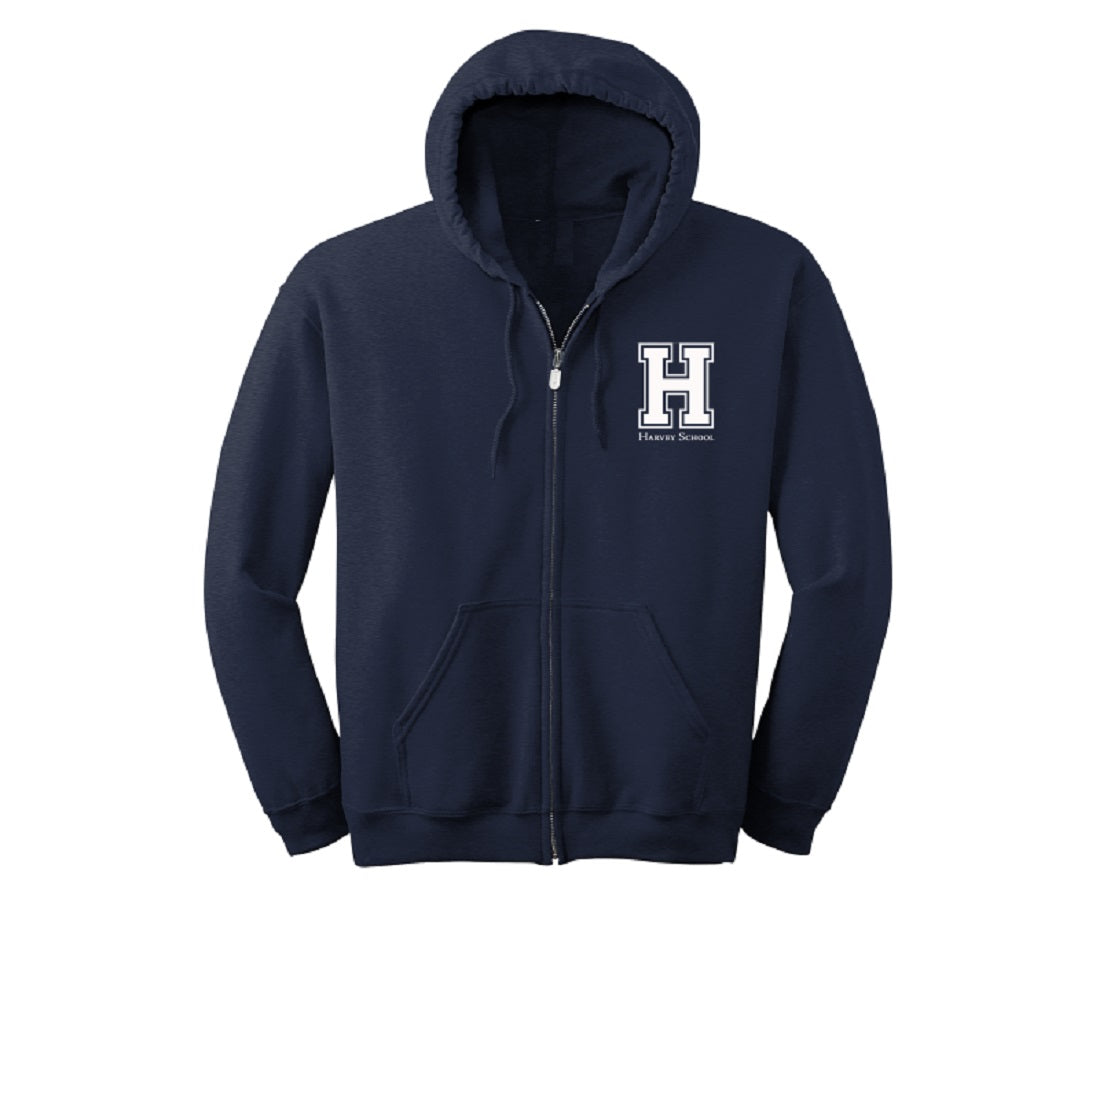 Harvey School Full-Zip Hoodie Jacket